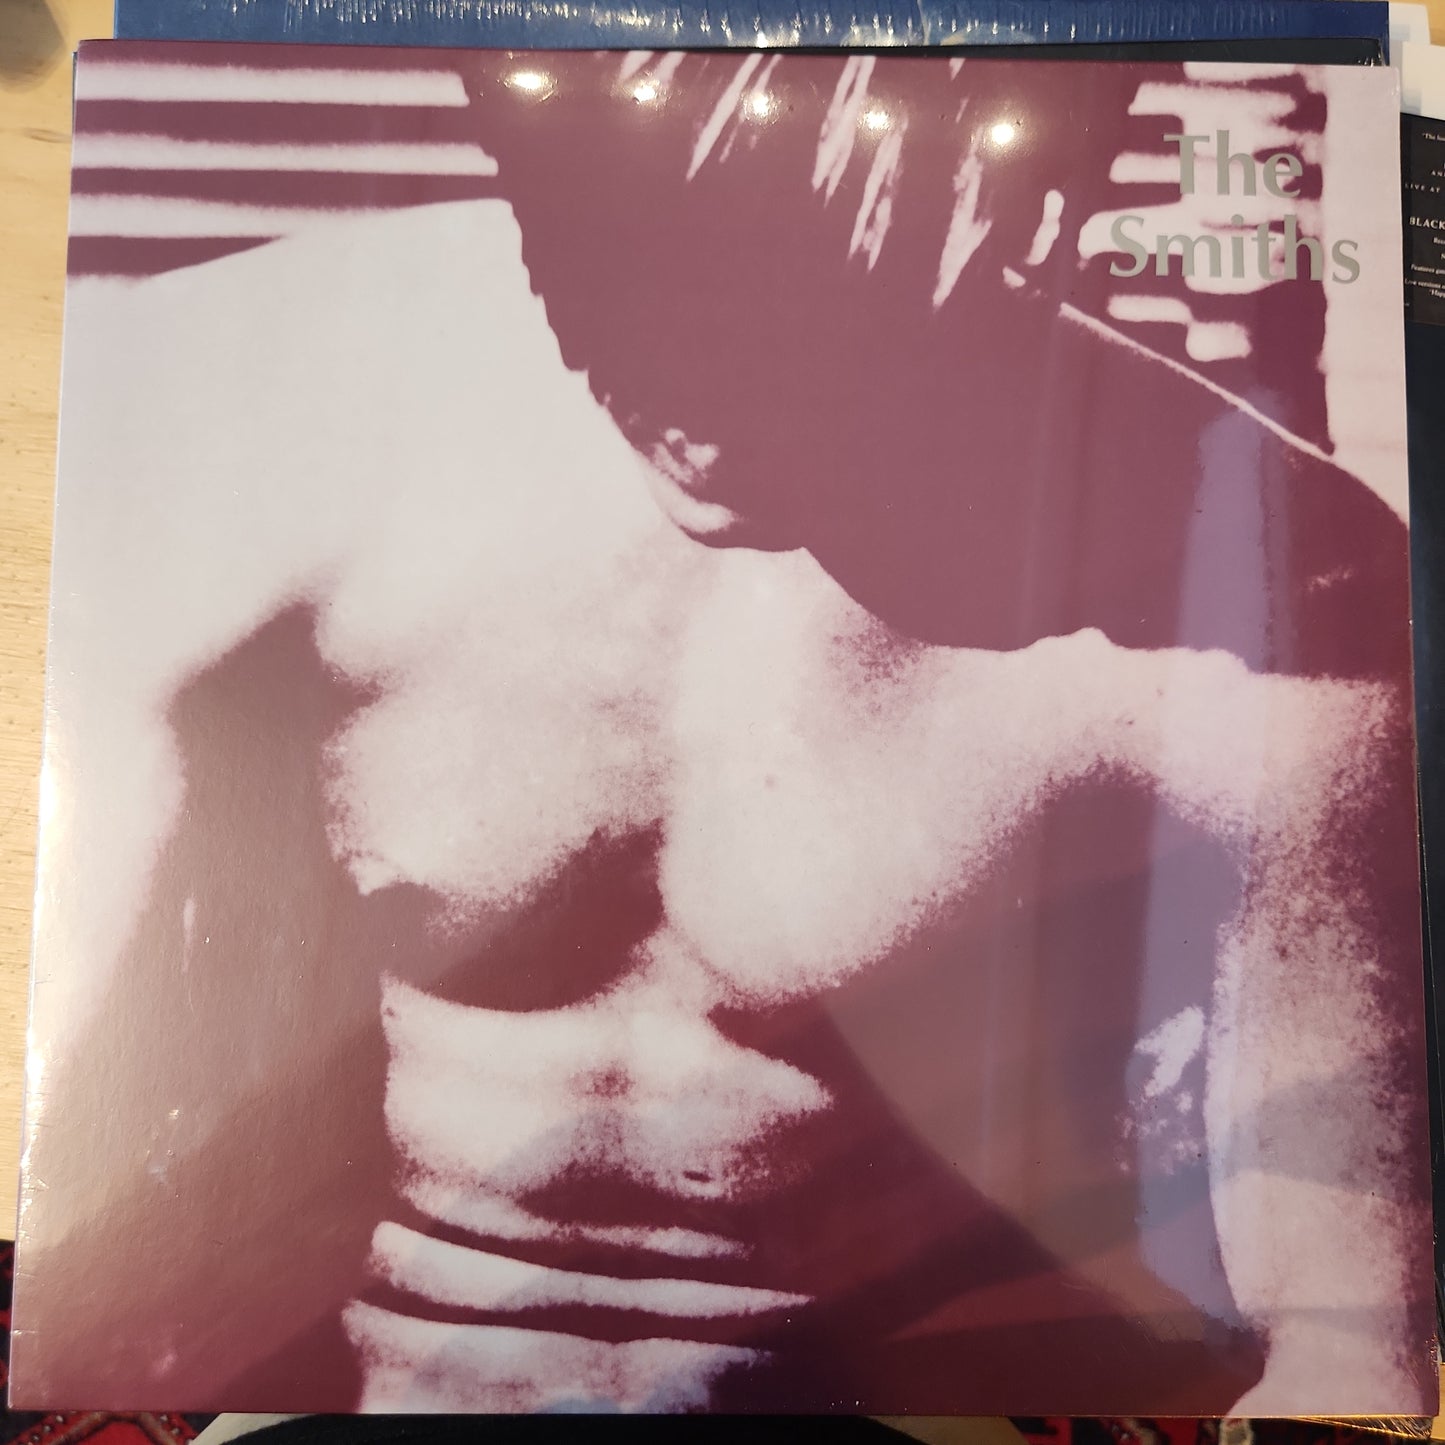 The Smiths - The Smiths - Vinyl LP